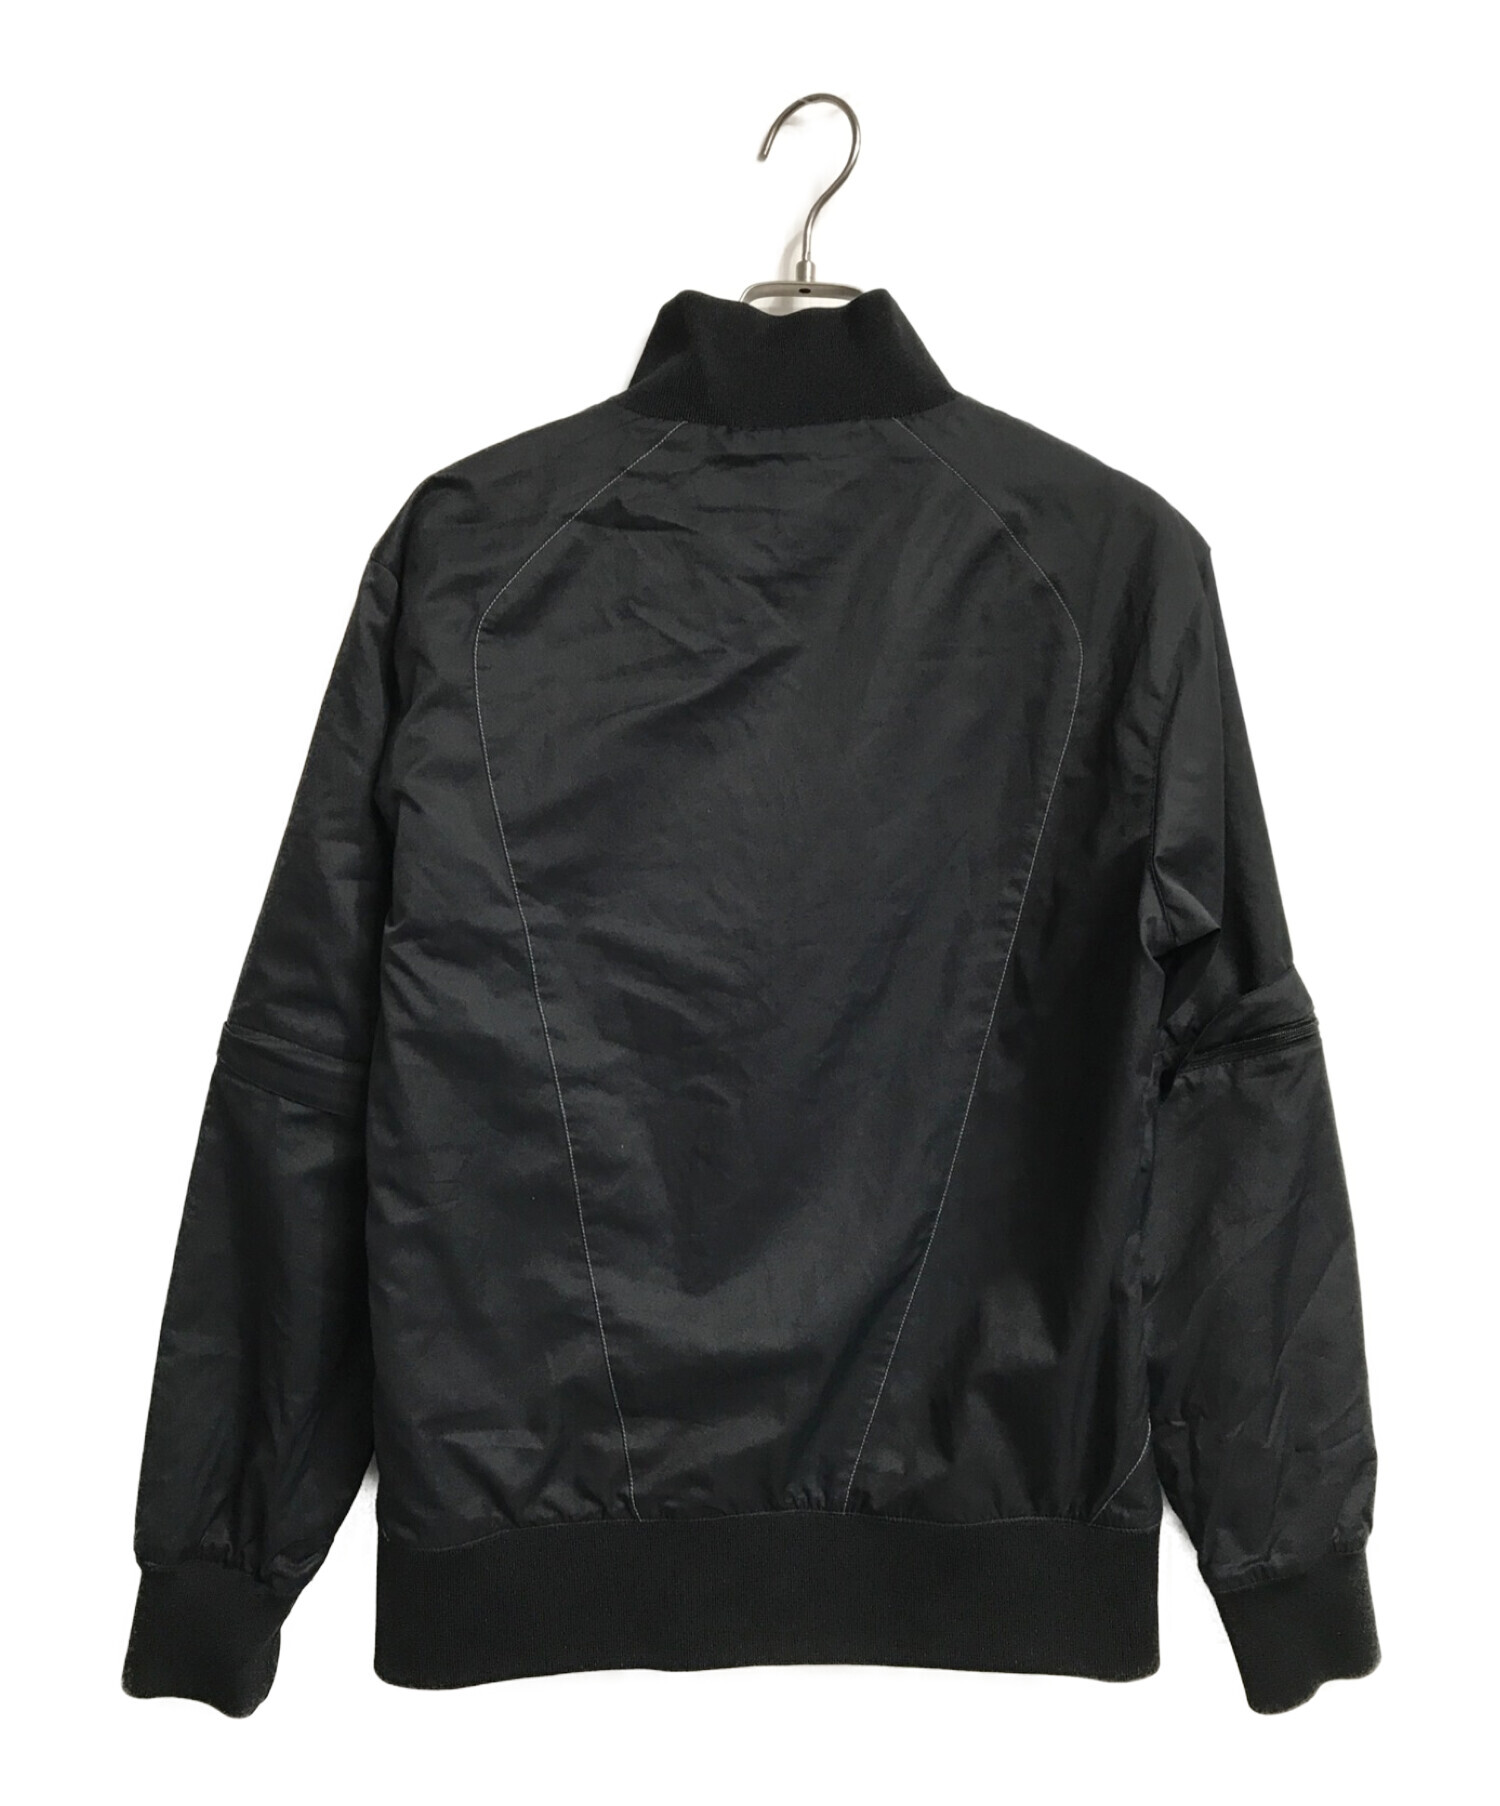 OAKLEY (オークリー) ギミックテックジャケット ブラック サイズ:L